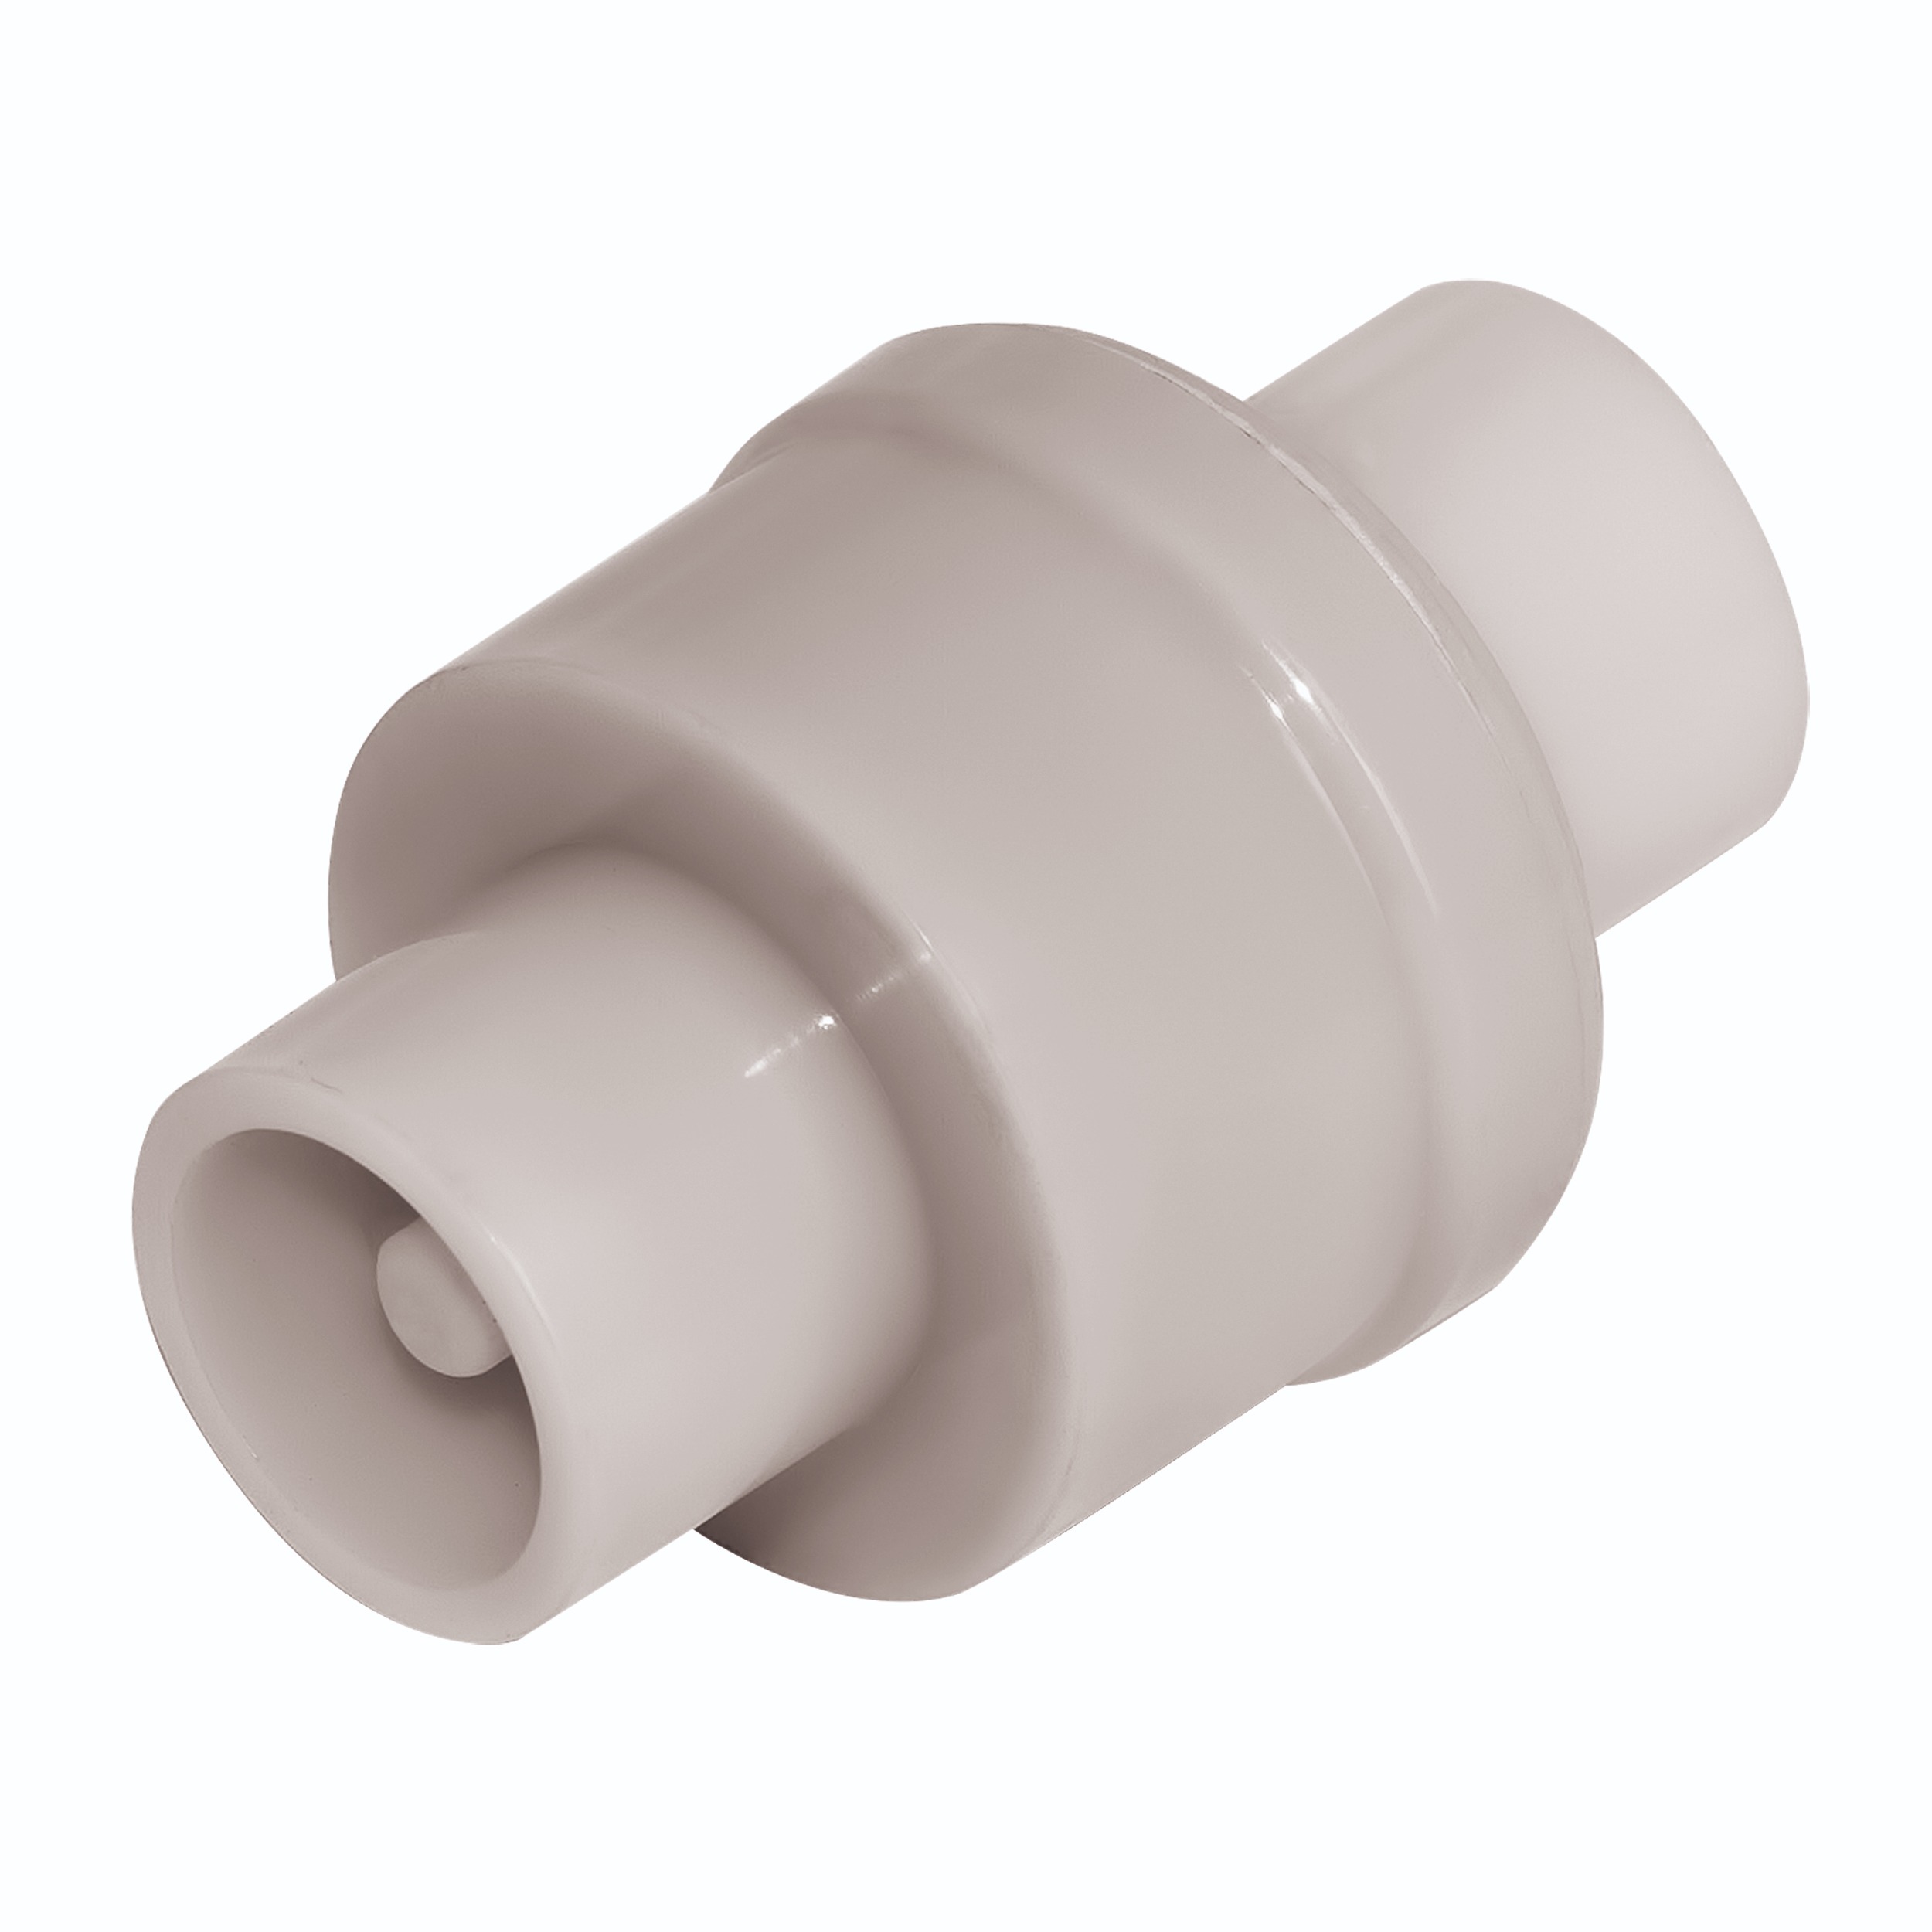 Купить обратный клапан для туалета. Обратный клапан ASD ø20. Обратный клапан 20мм. Обратный клапан для воды 20 полипропилен. Обратный клапан ø 20 мм.